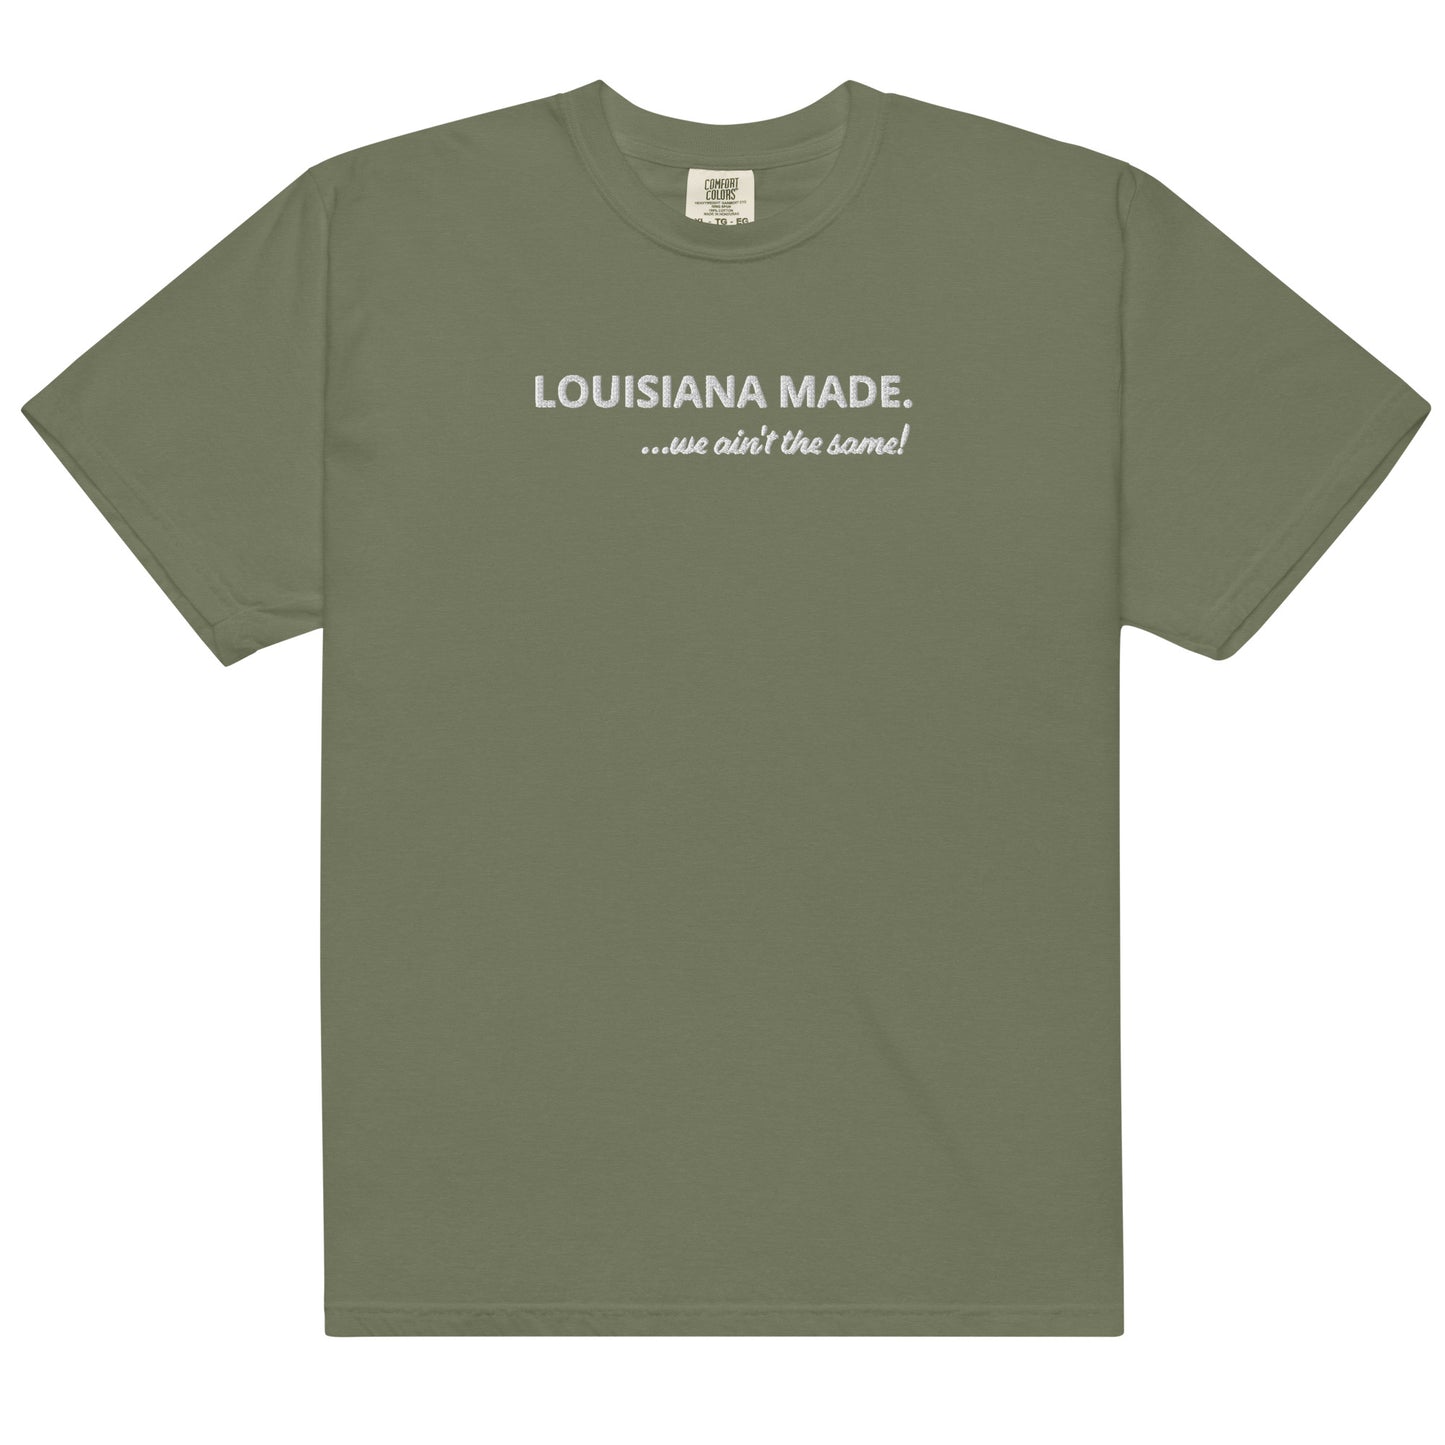 Louisiana Made heavyweight t-shirt